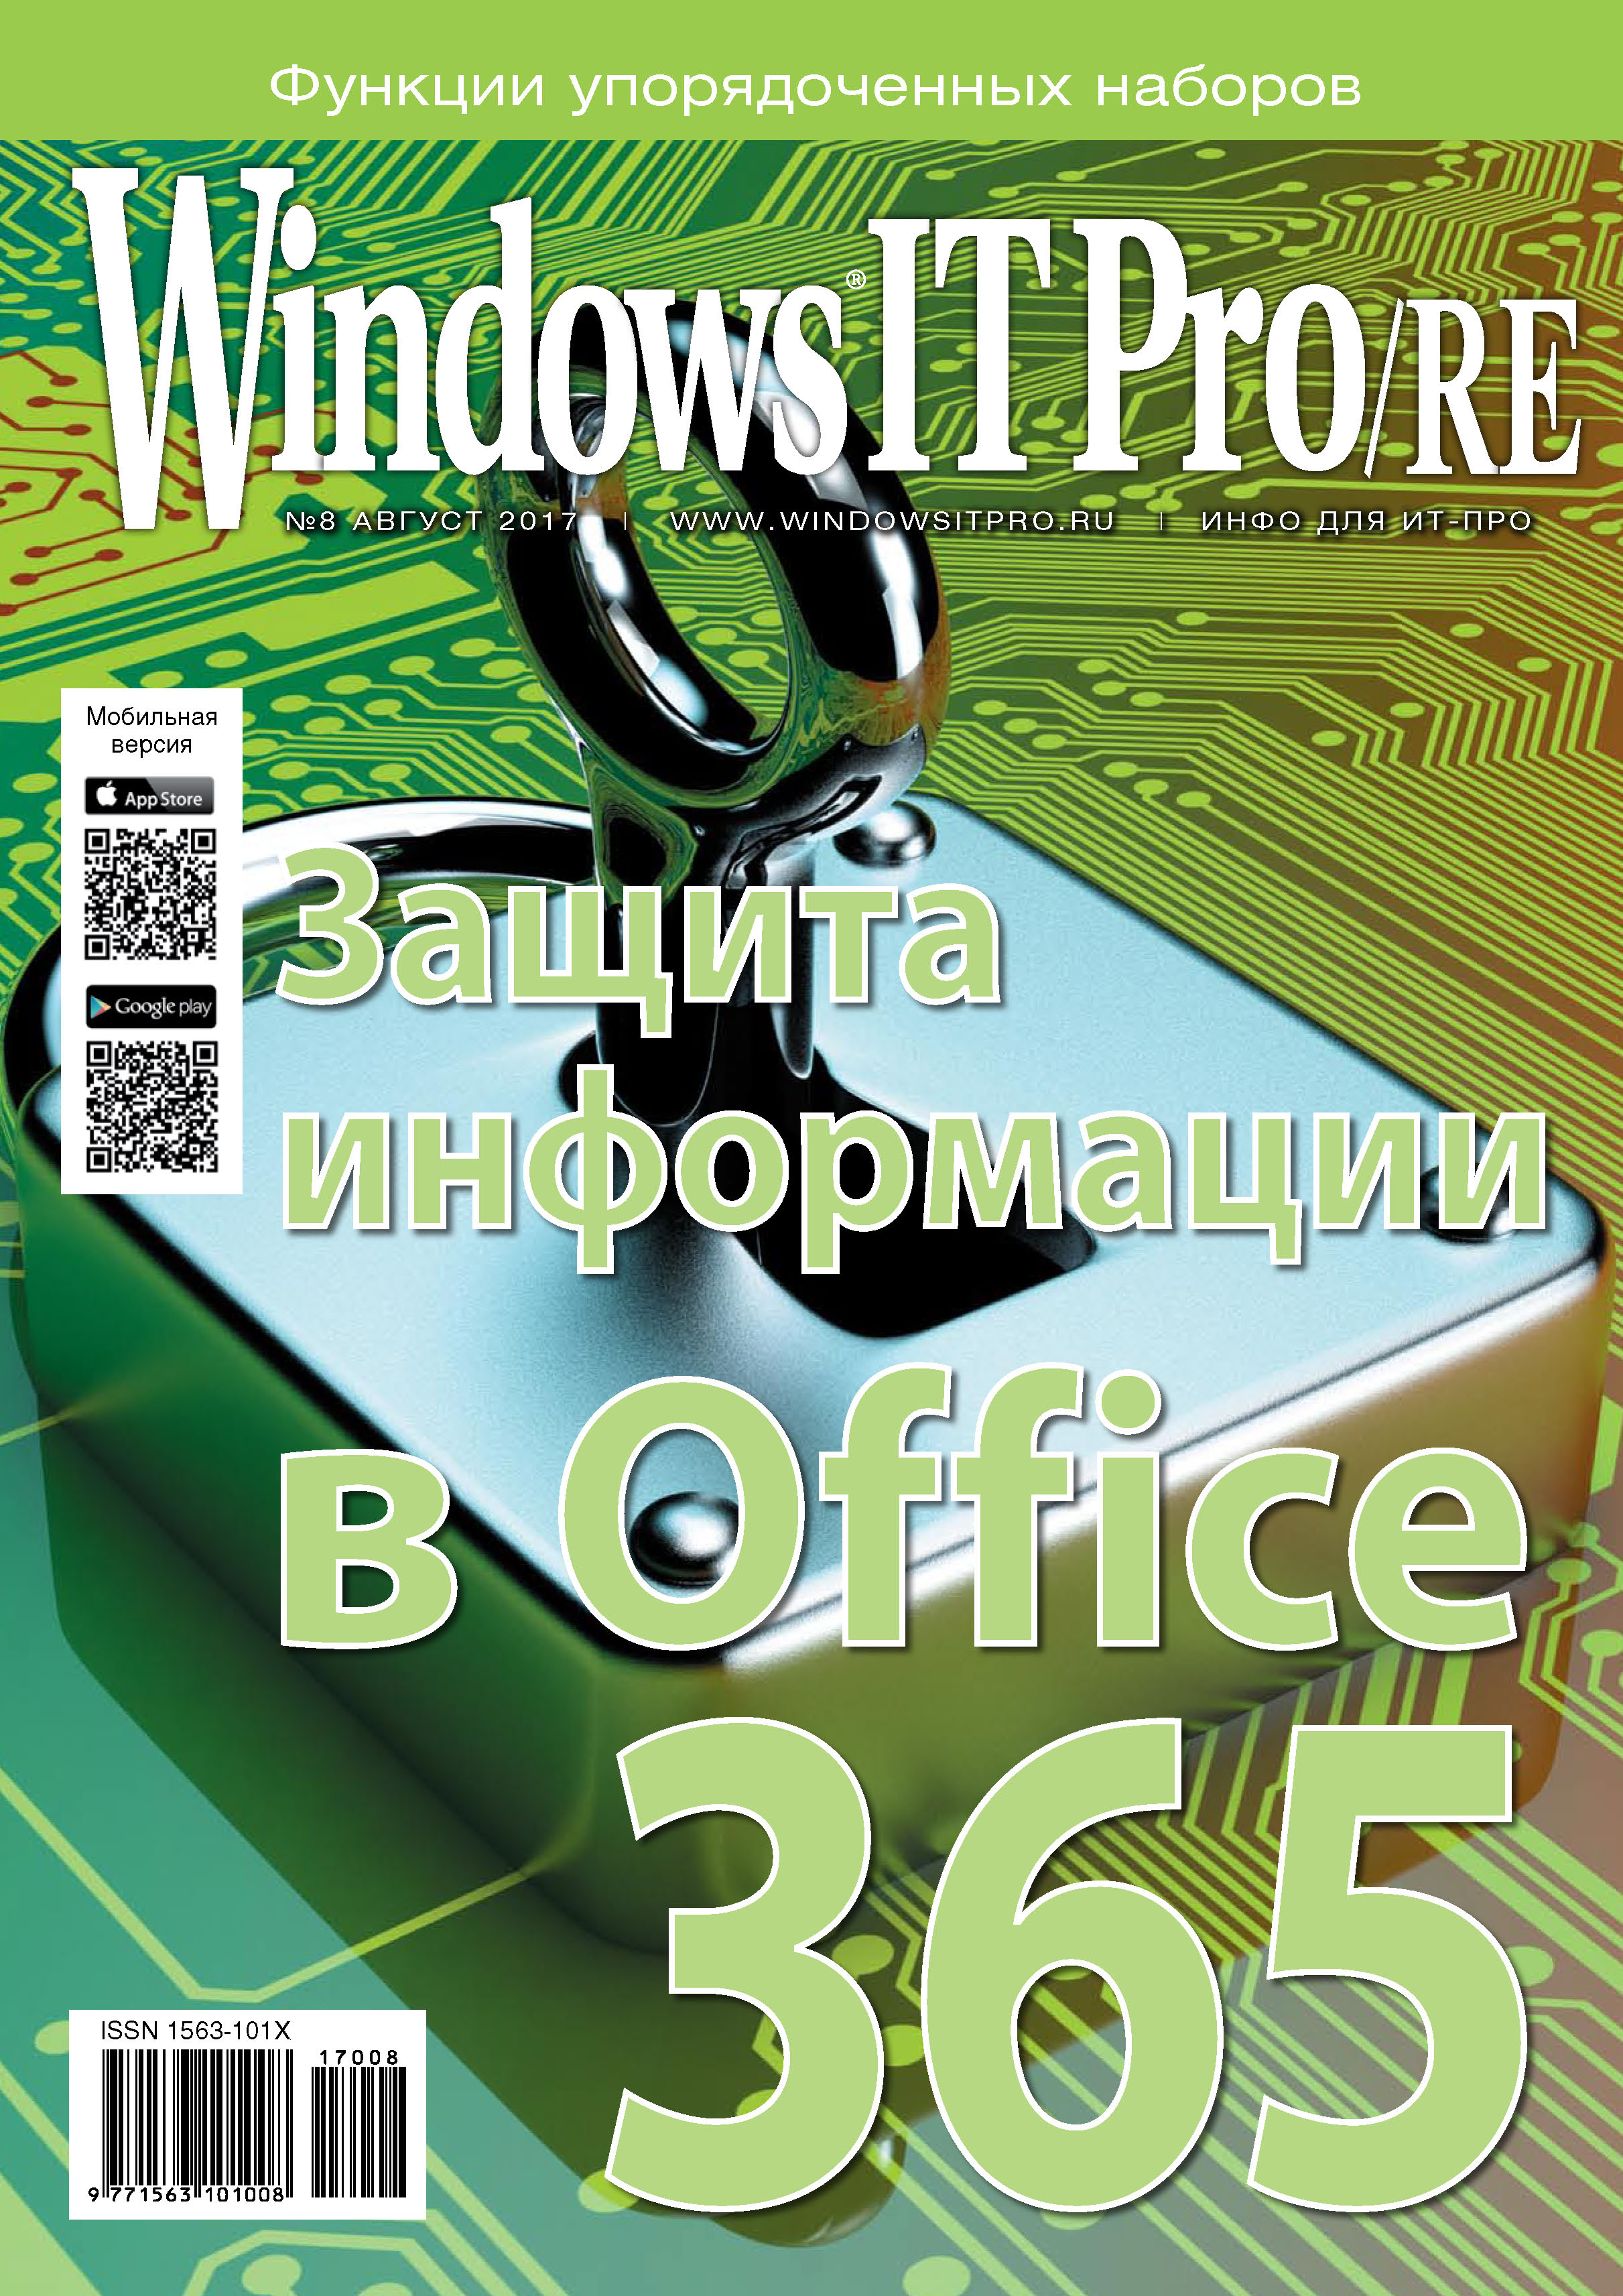 Windows IT Pro/RE№08/2017